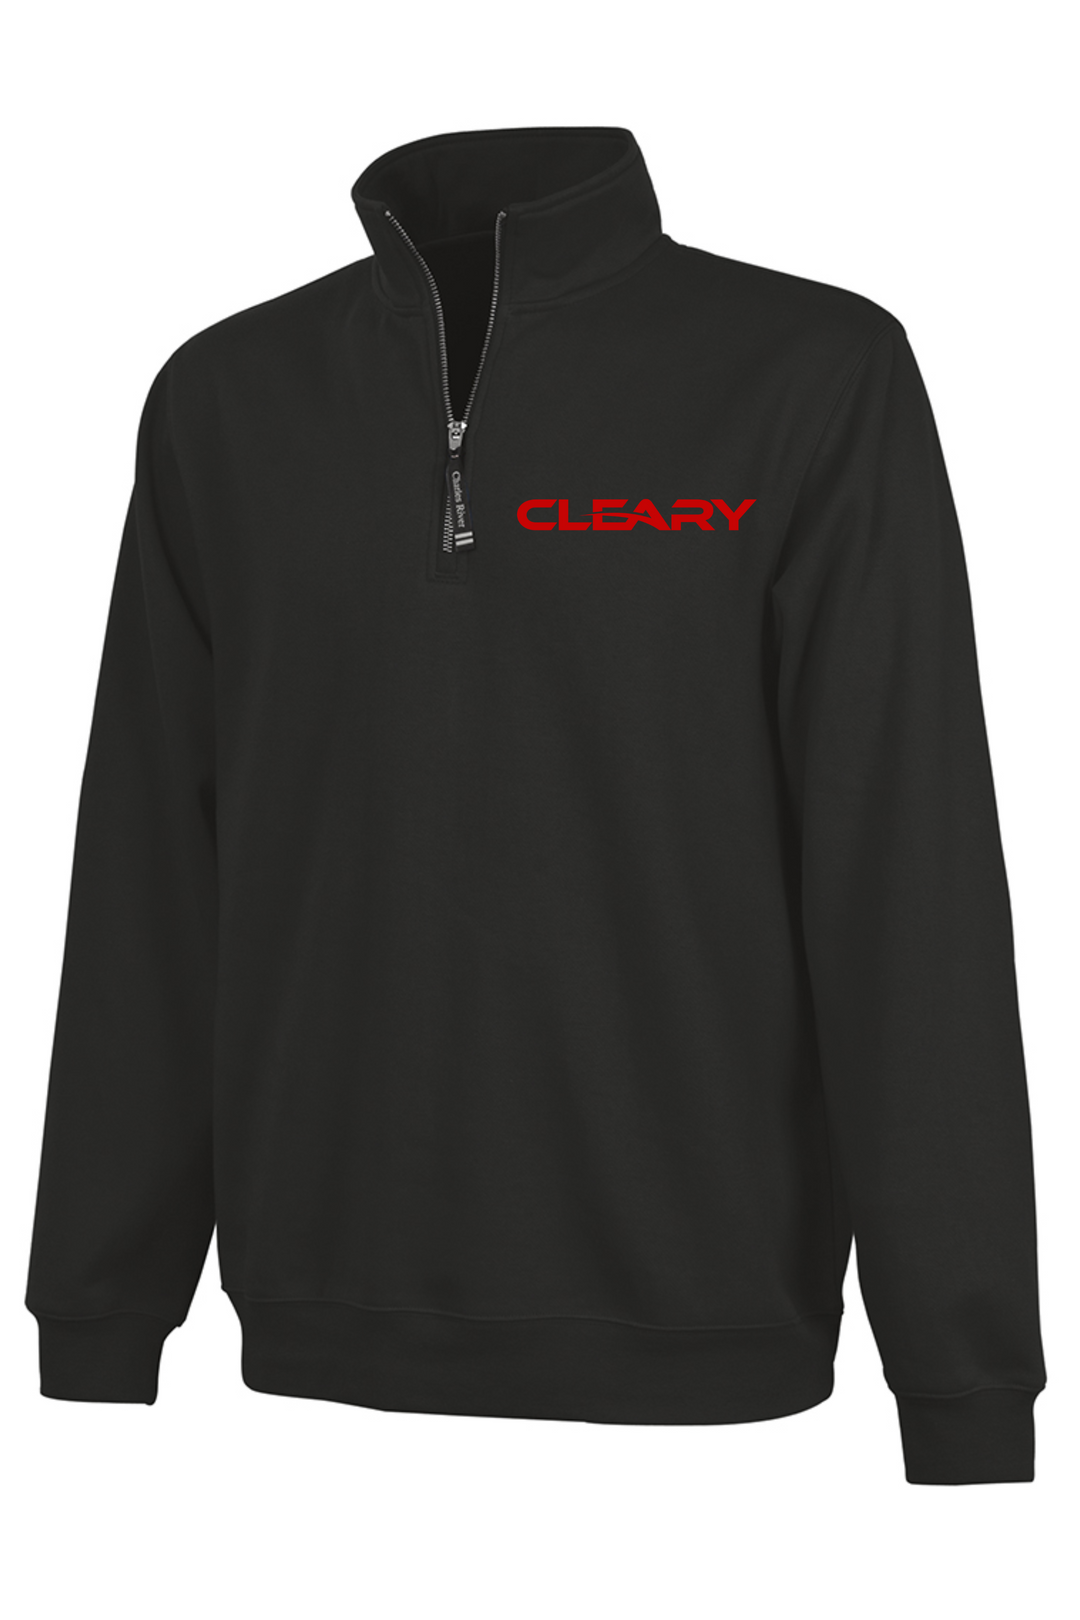 Cleary's Crosswind Quarter Zip Sweatshirt Black